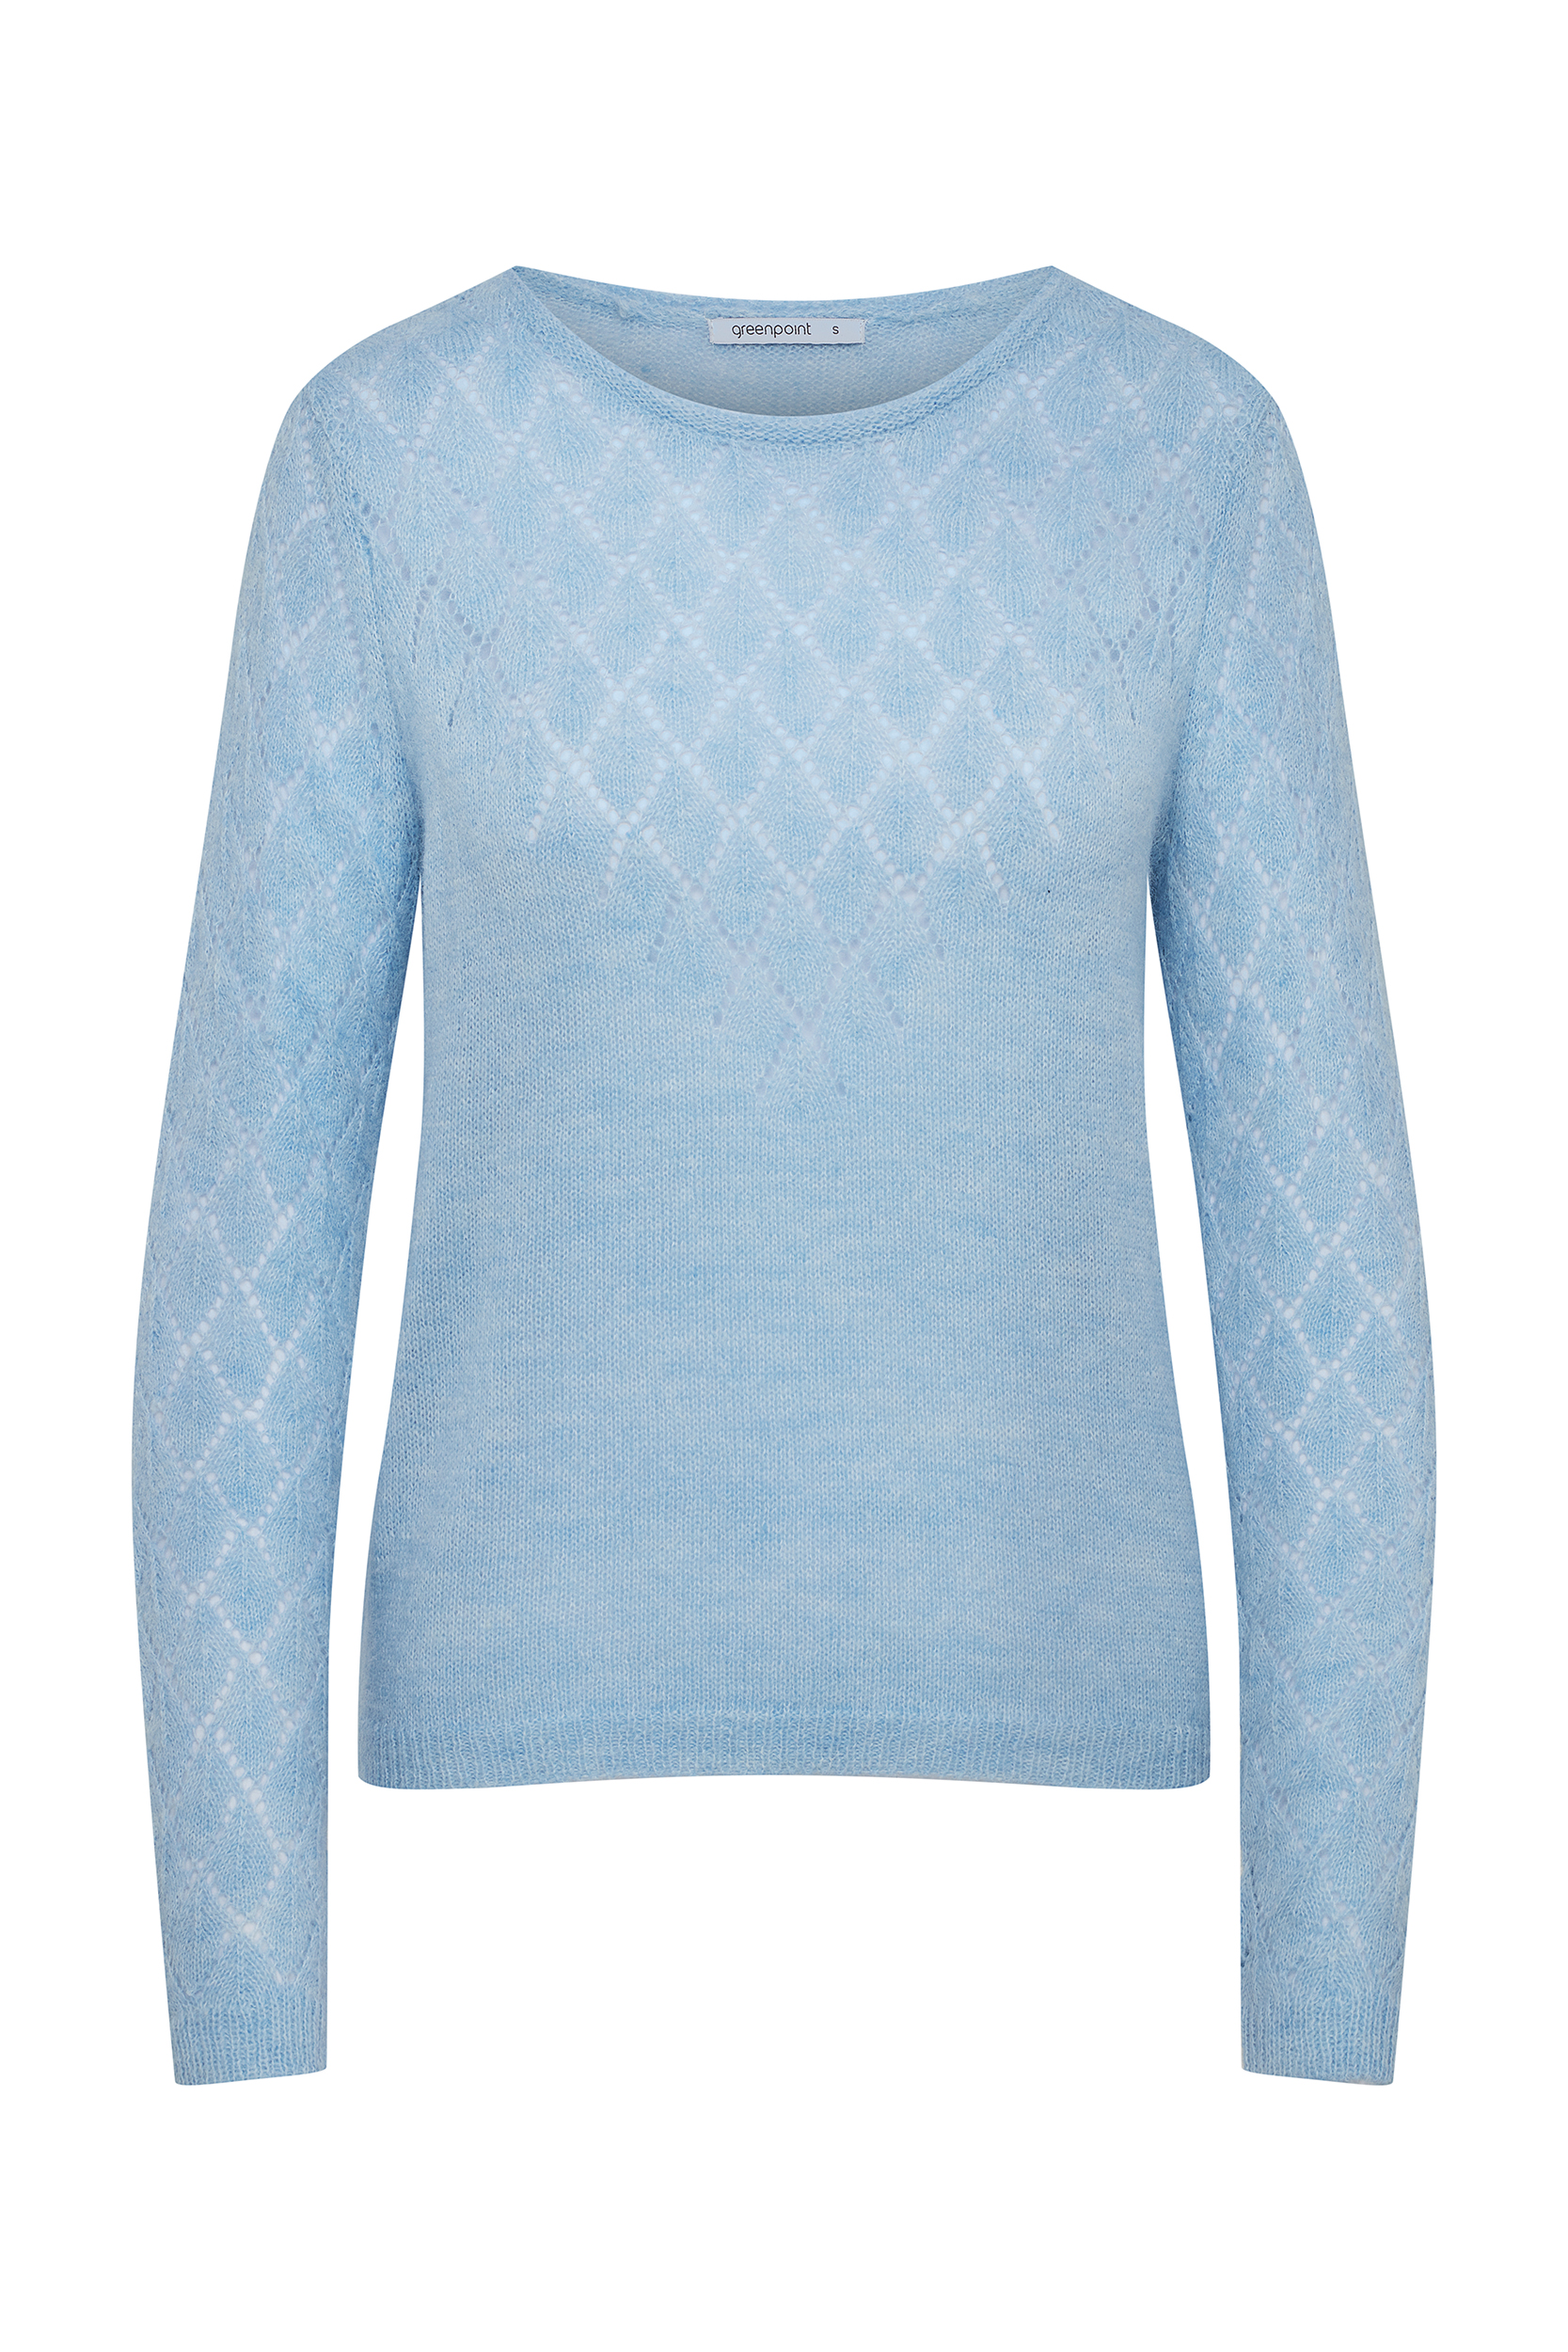 Błękitny sweter zdobiony ażurowym splotem